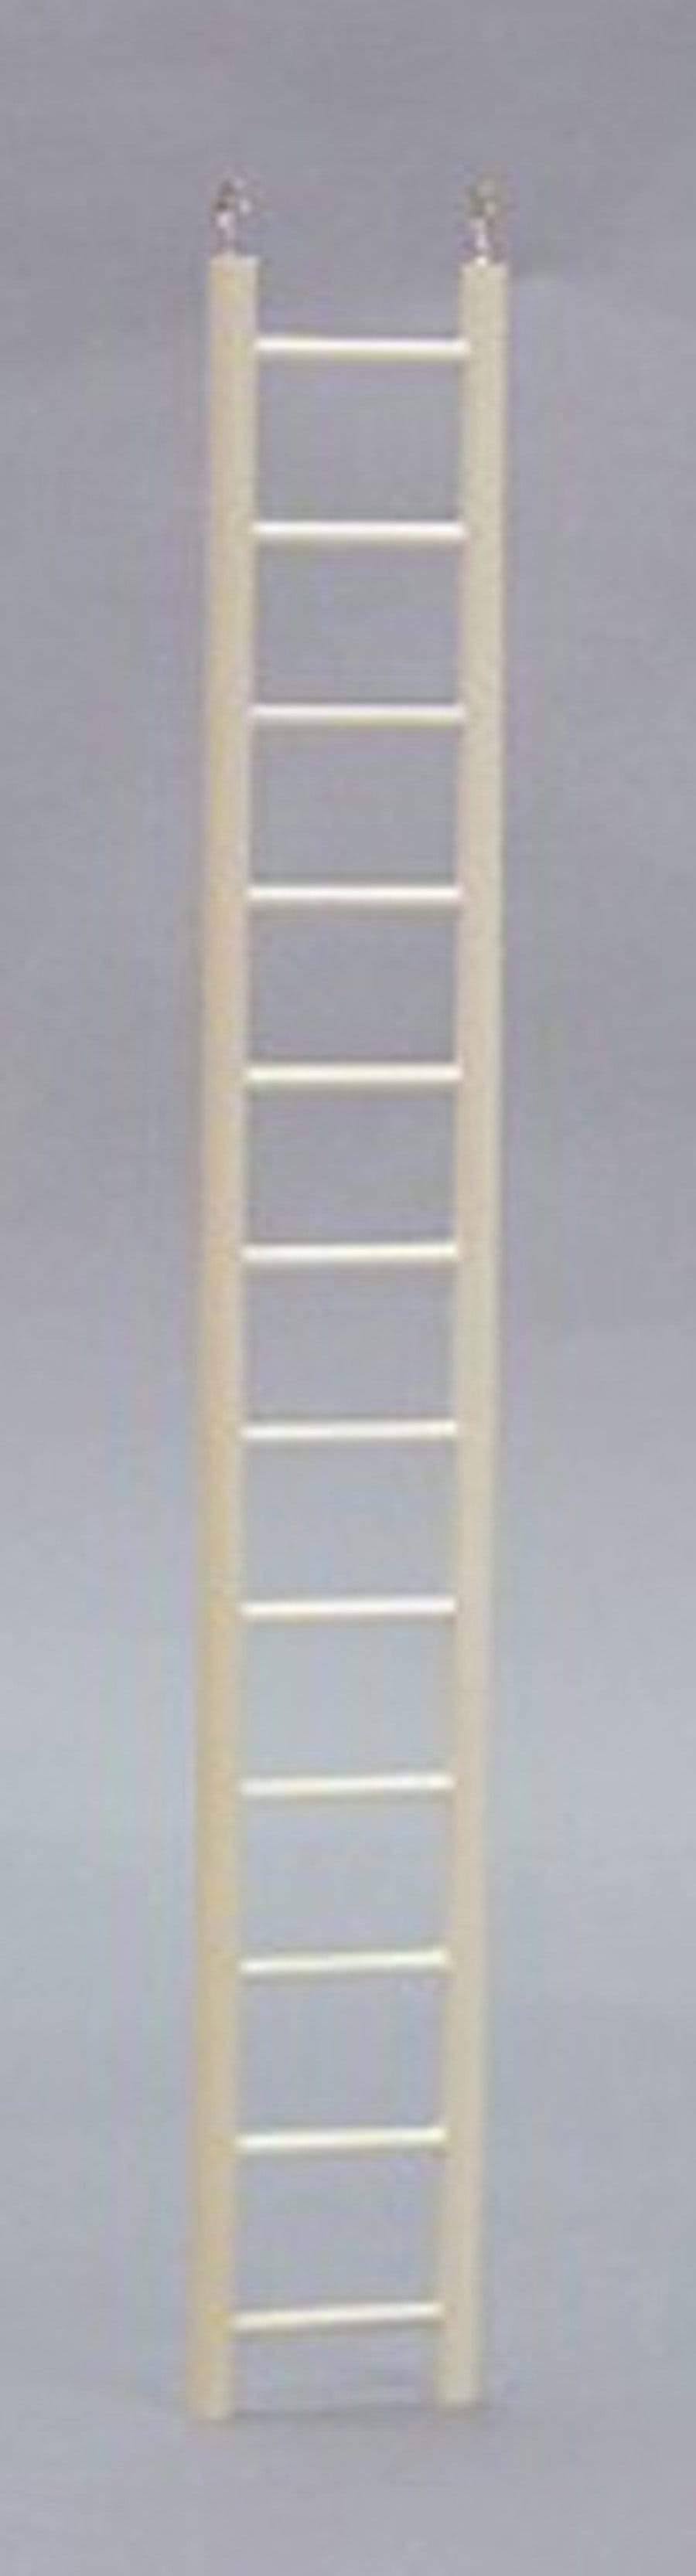 North American Pet Bird Ladder 24 inch, Beige